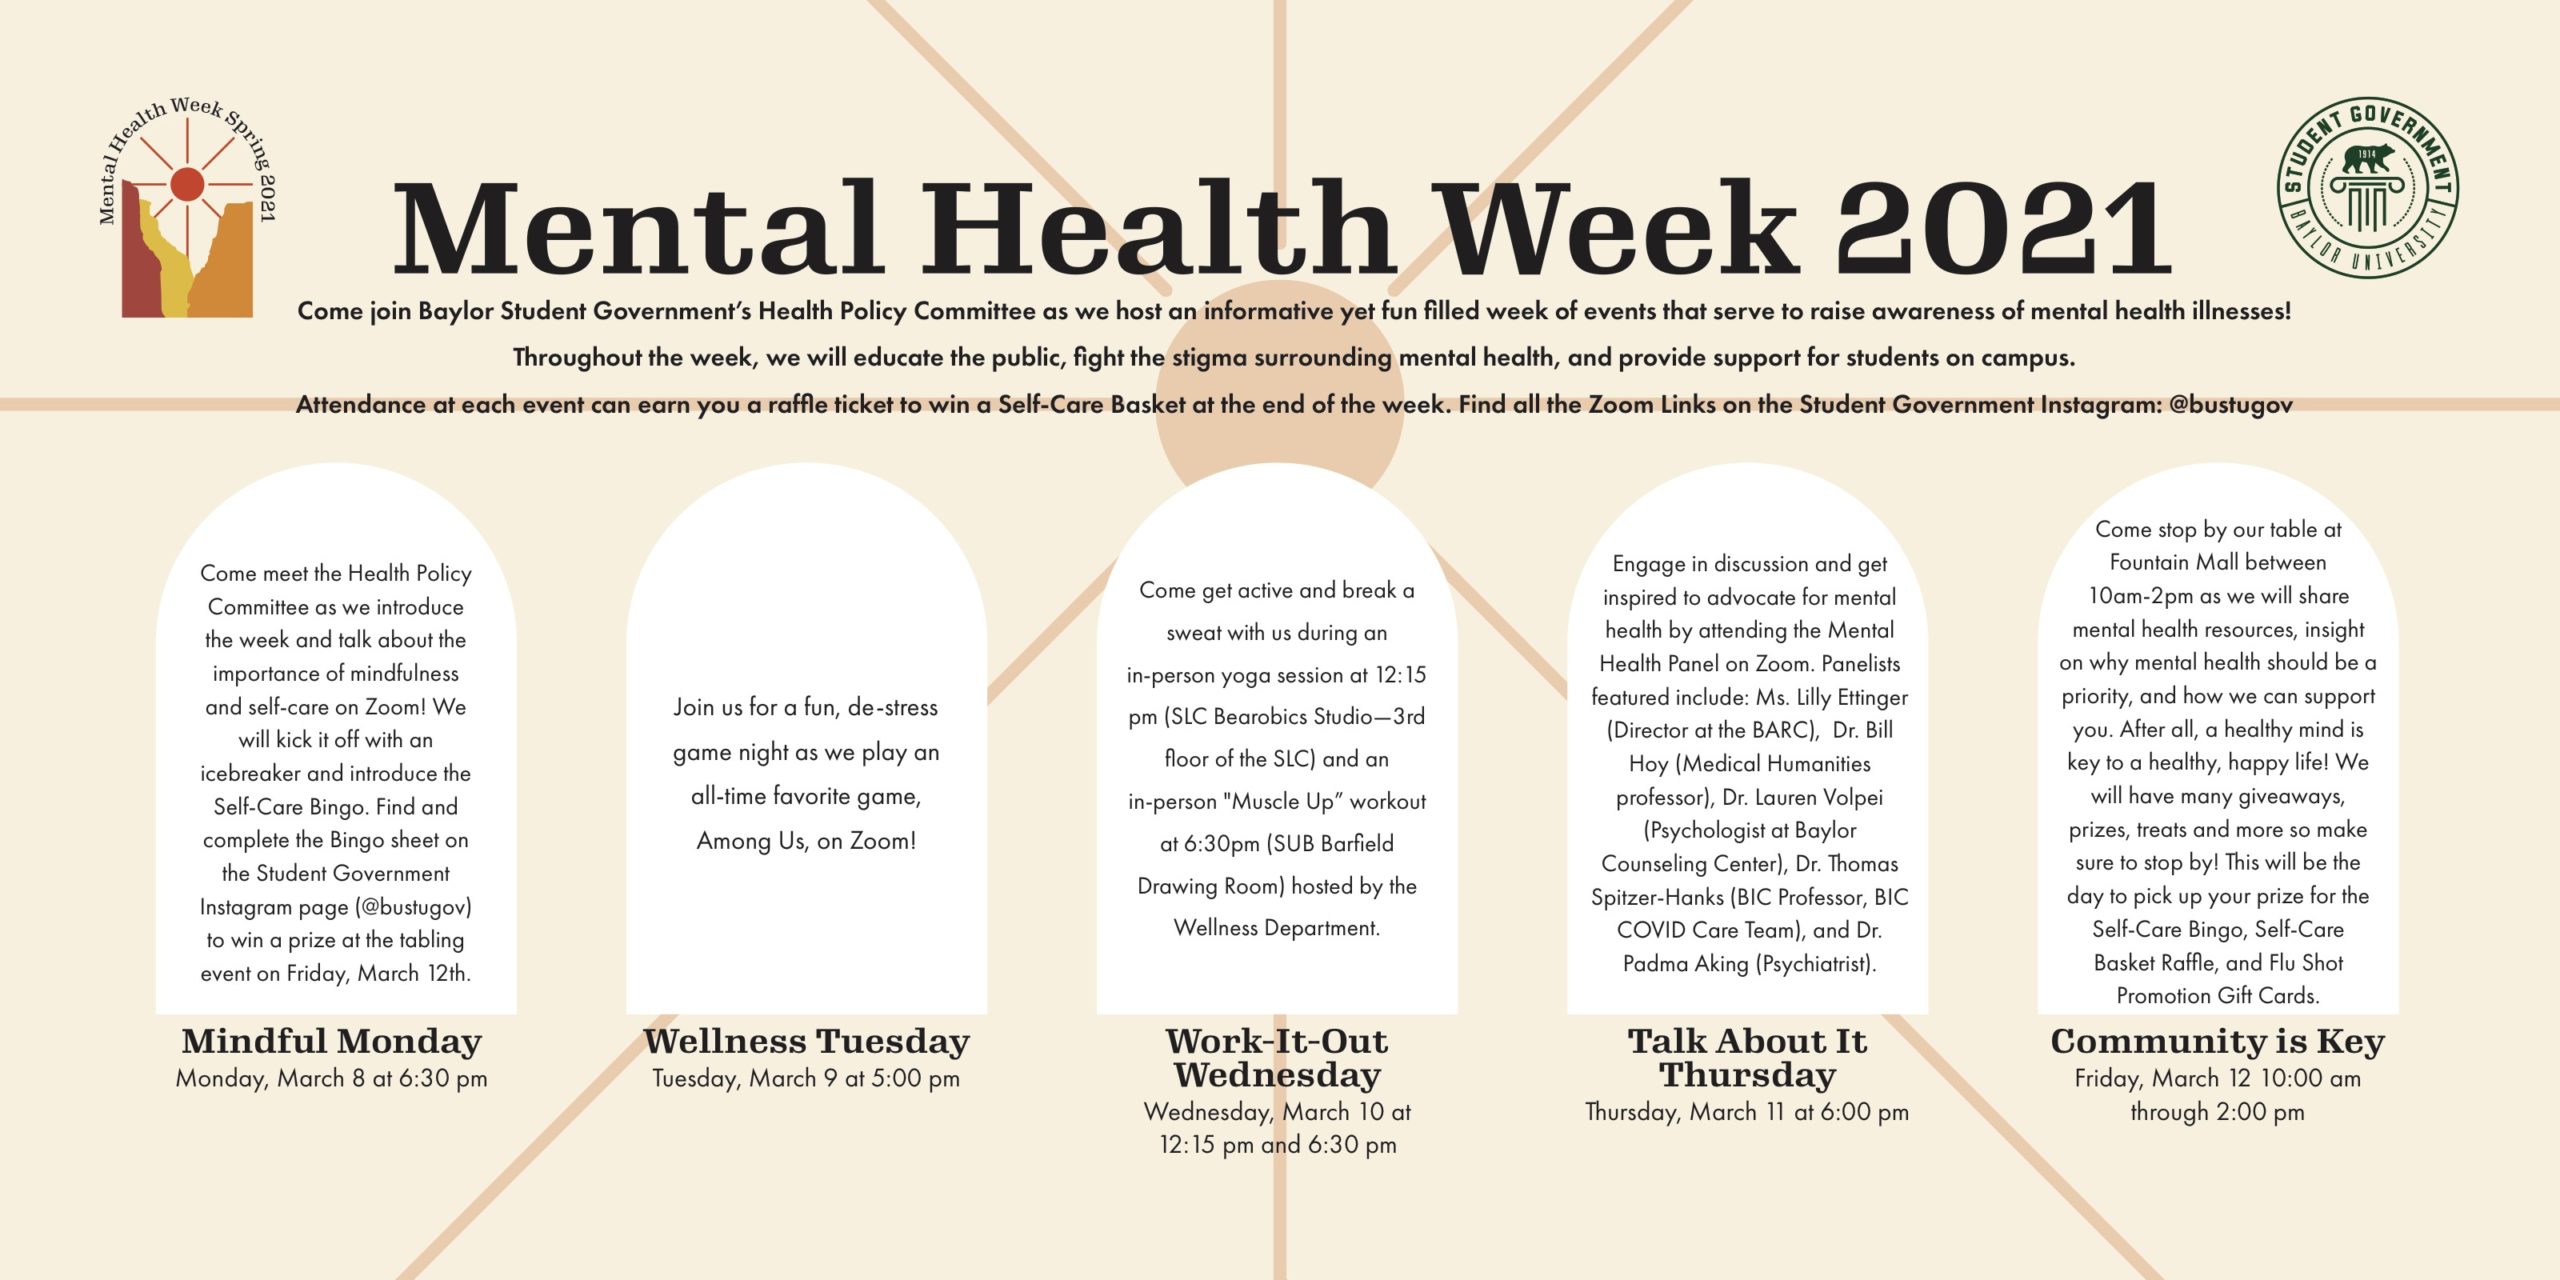 Mental Health Week description of activities